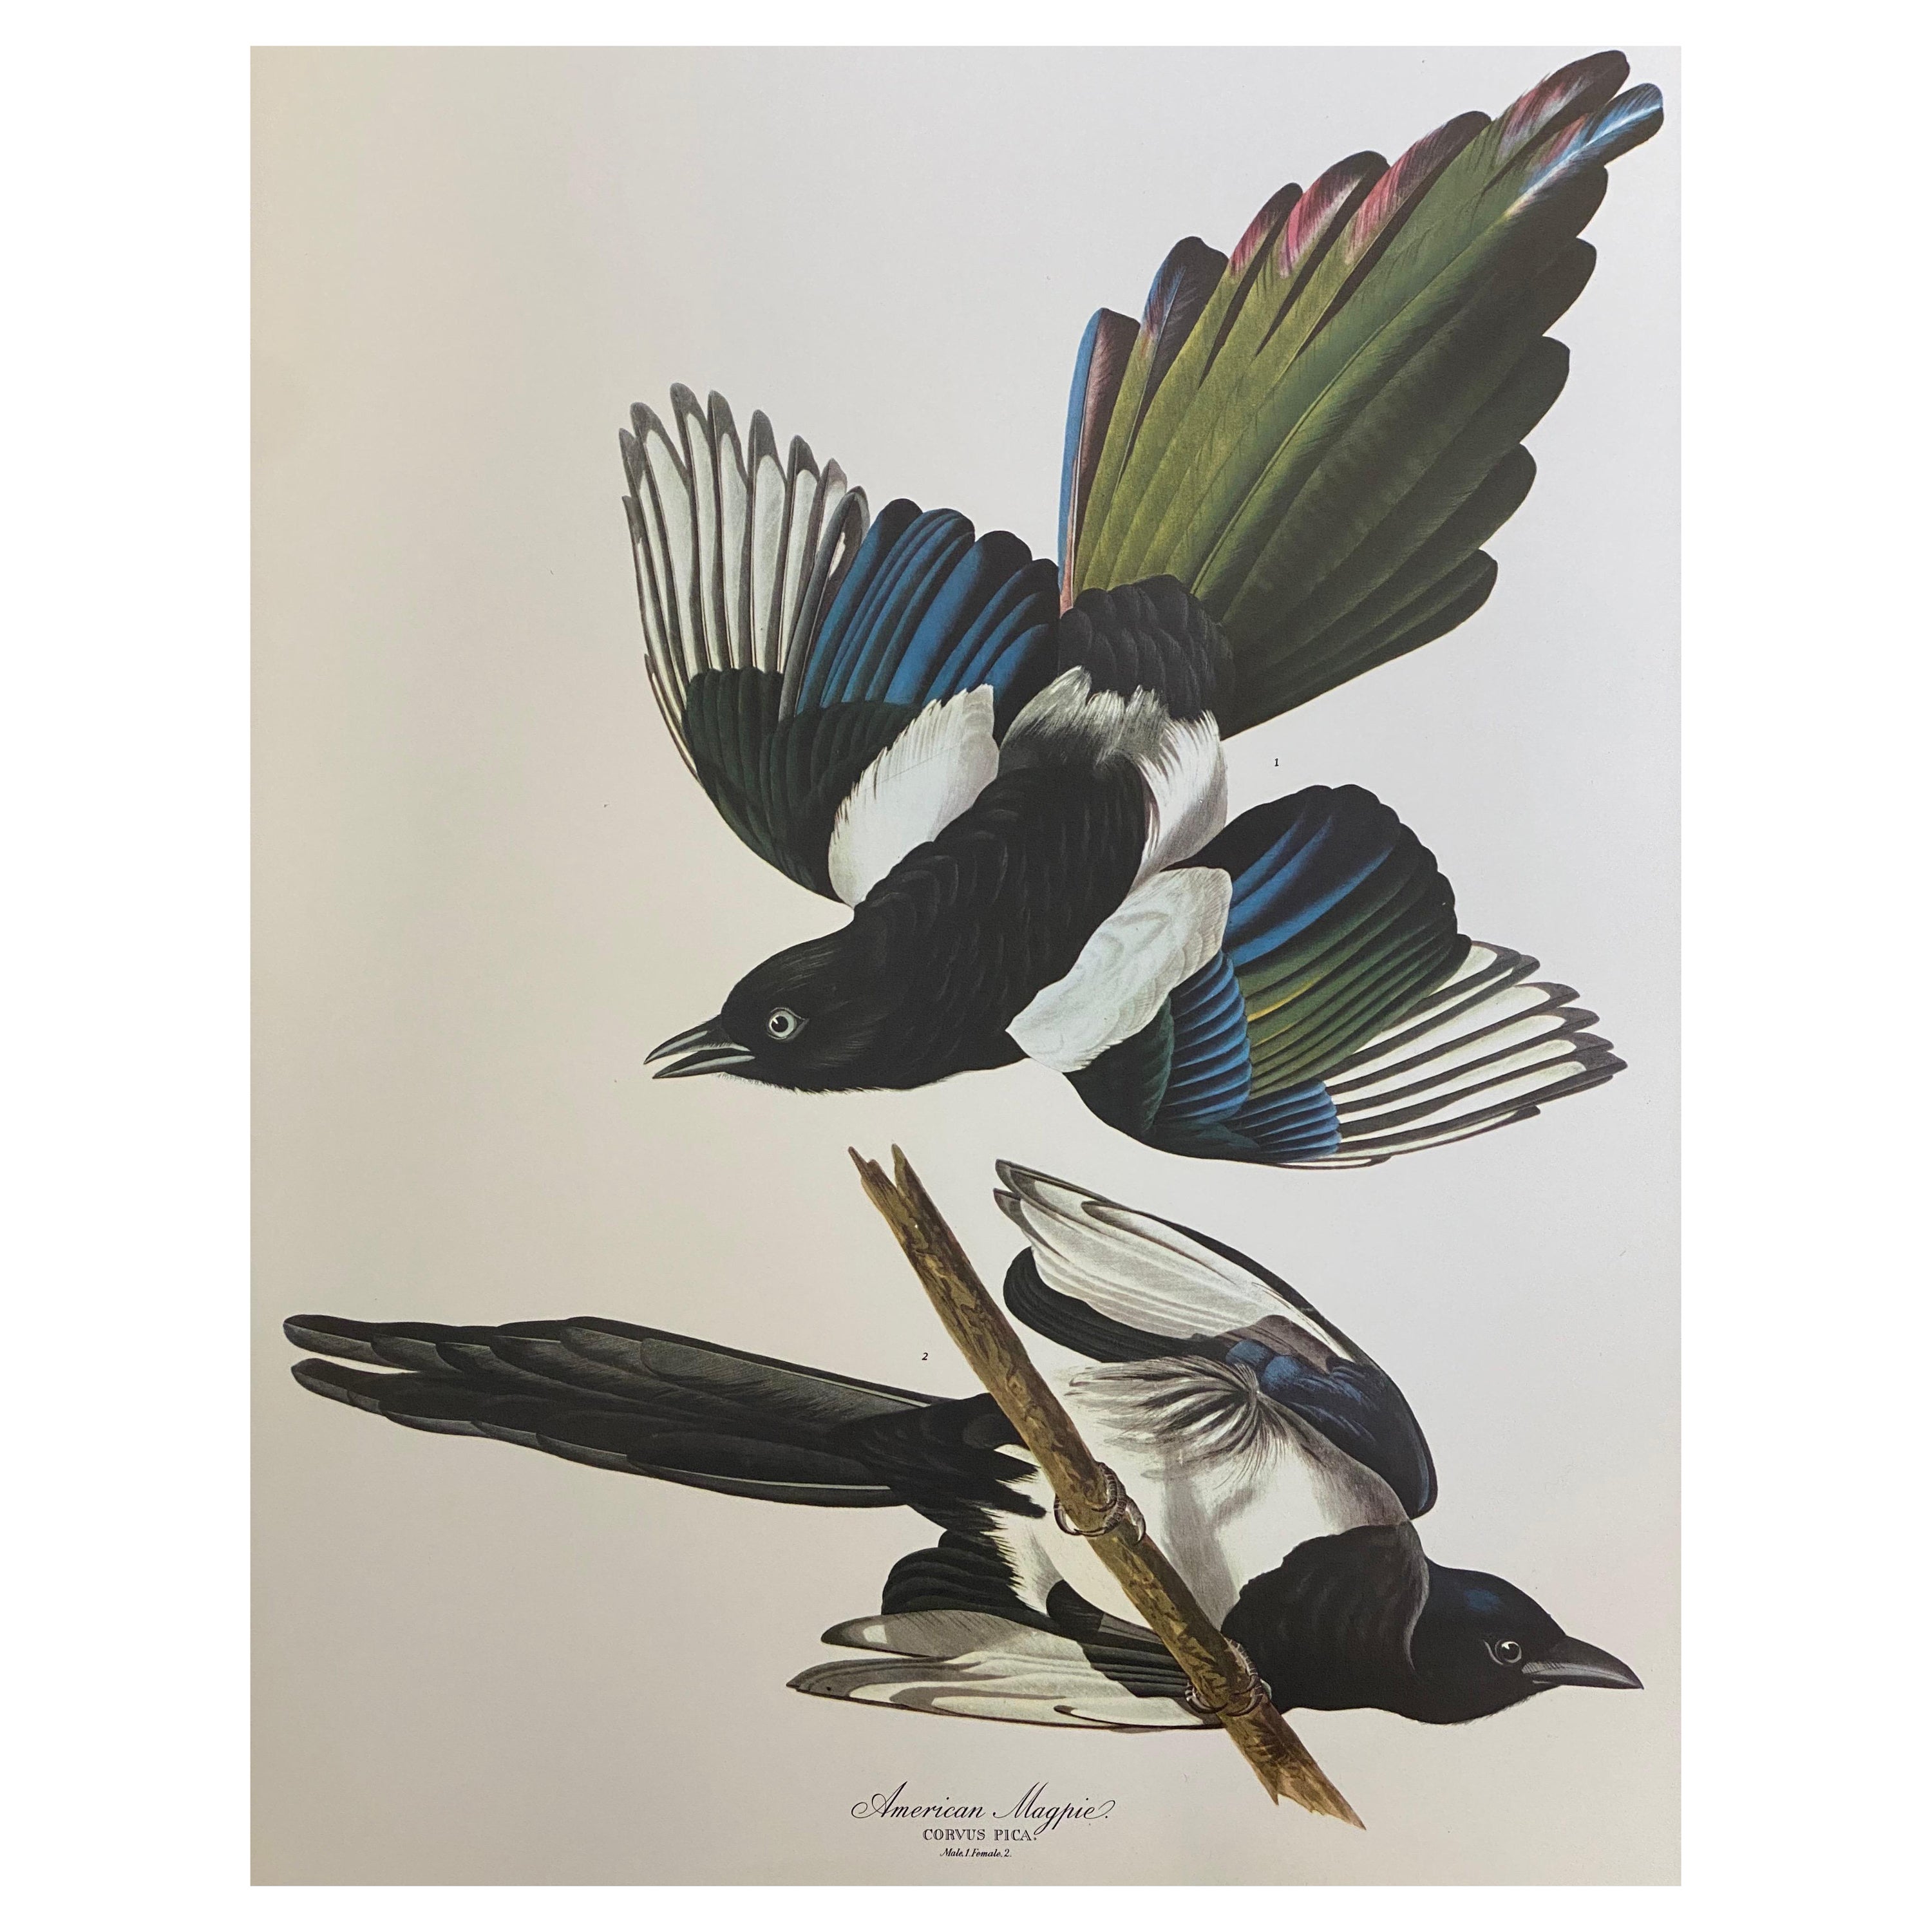 Großer klassischer Vogel-Farbdruck nach John James Audubon, American Magpie